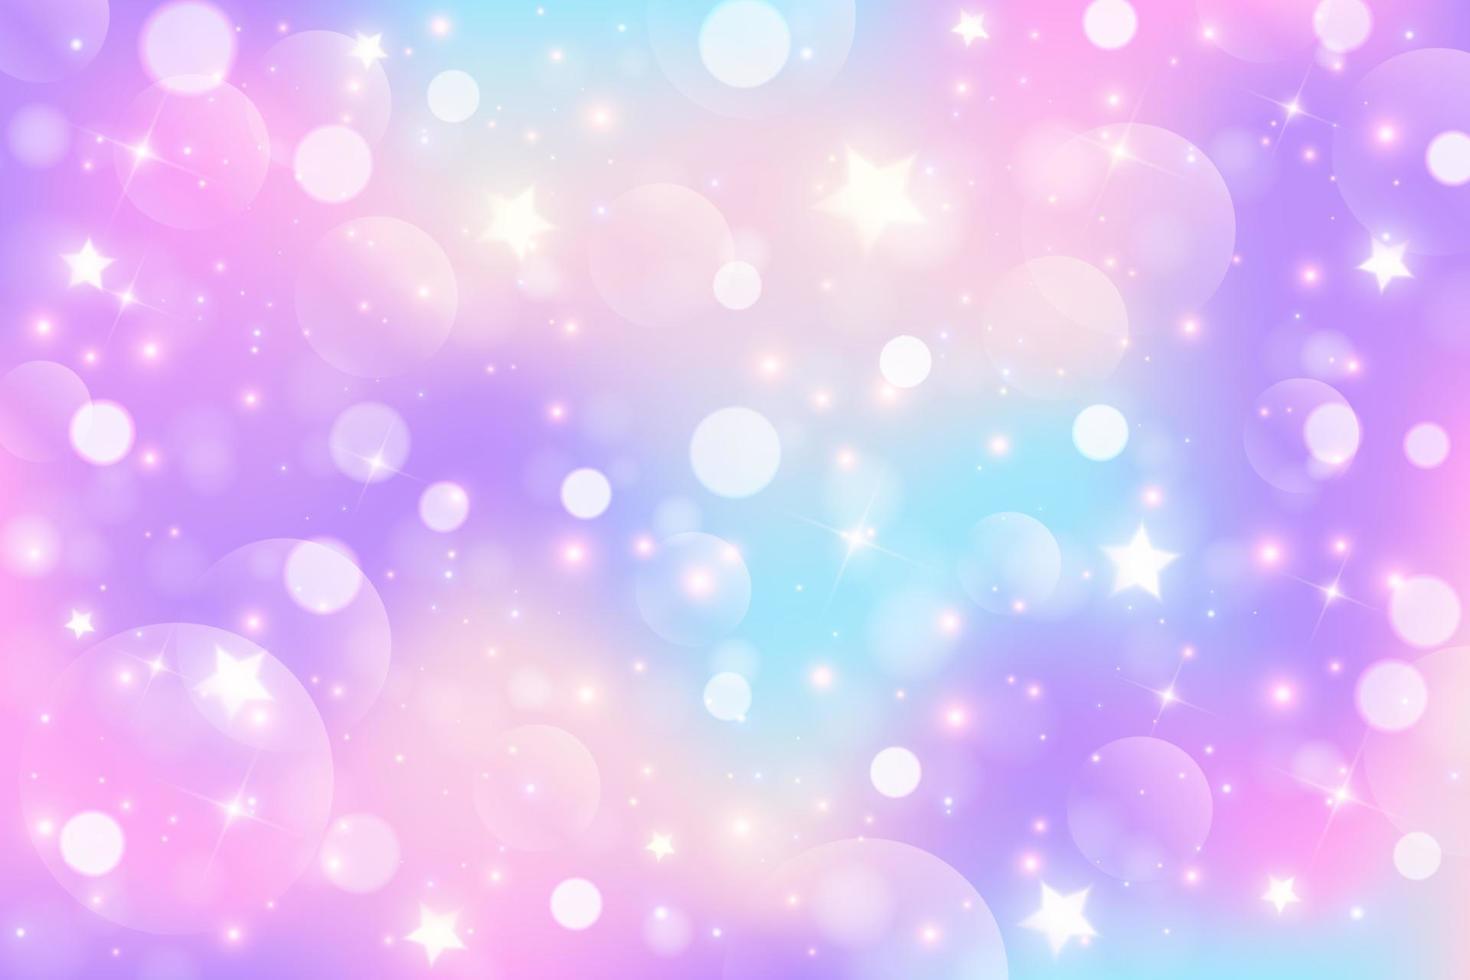 regenboog eenhoorn fantasie achtergrond met sterren. holografische illustratie in pastel kleuren. helder veelkleurig lucht met sterren en bokeh. vector. vector